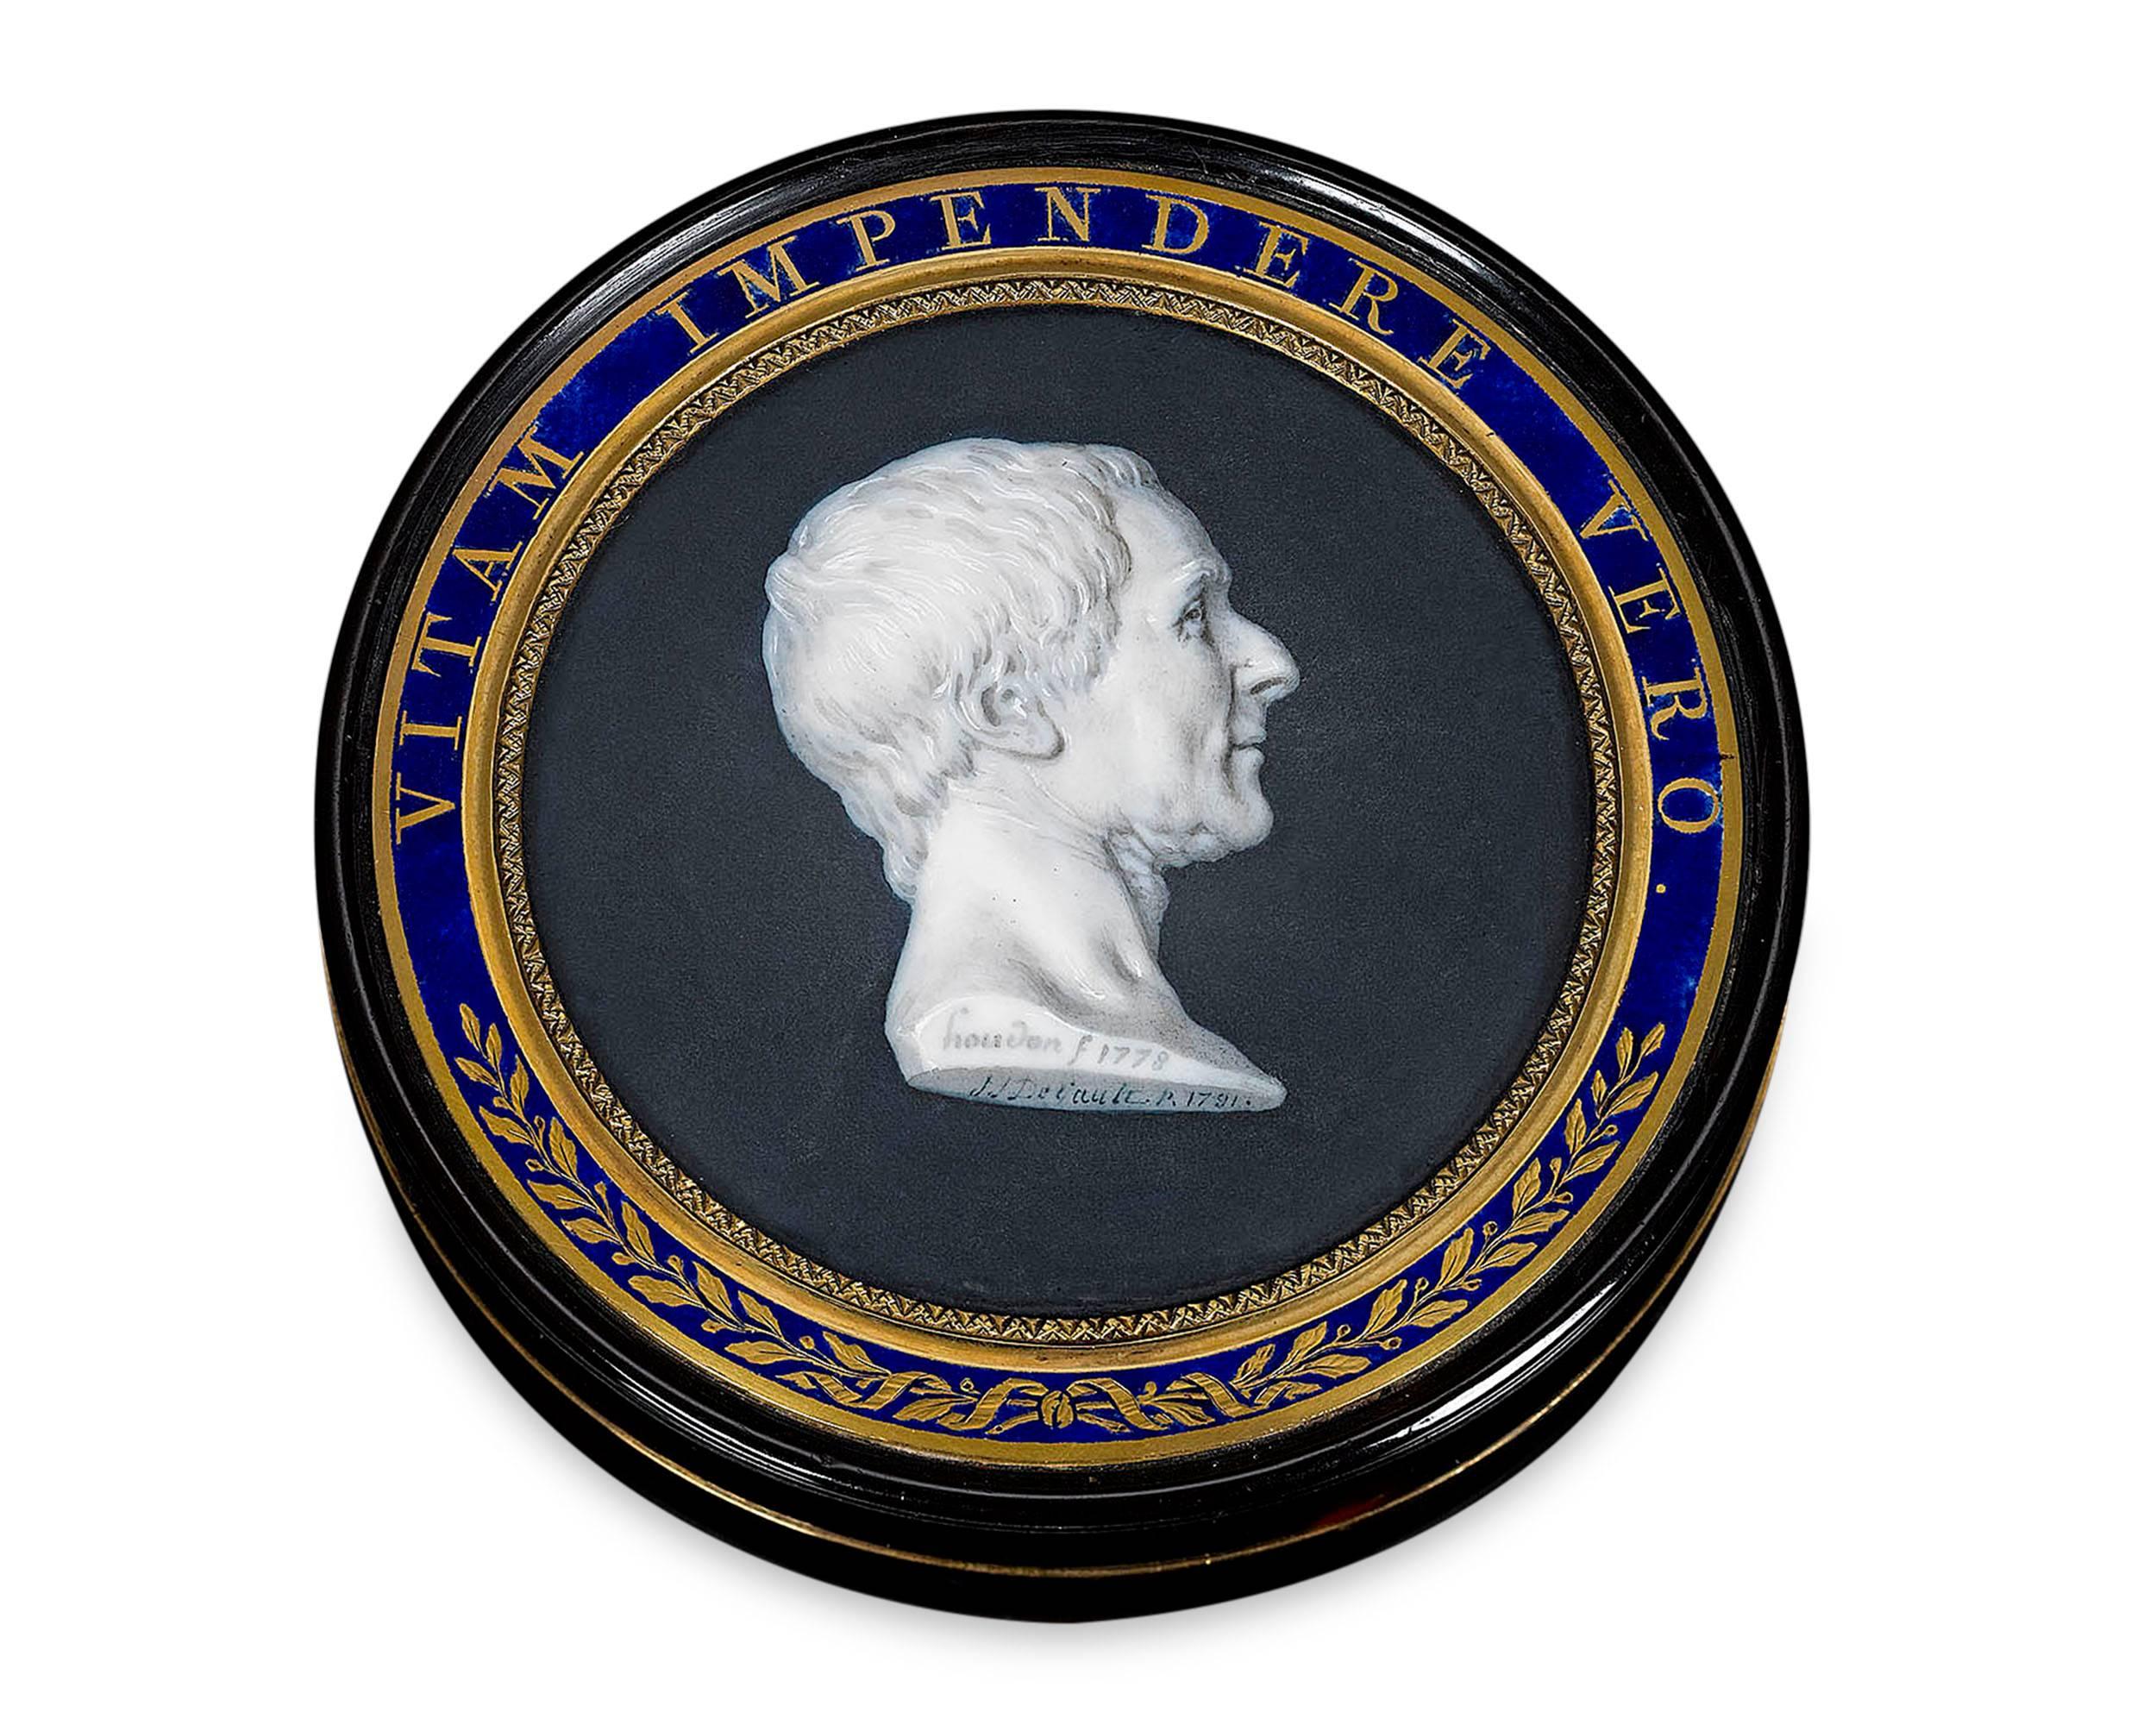 Eine exquisite Miniatur des französischen Philosophen Charles Montesquieu ziert den Deckel dieser mit Schildpatt ausgekleideten Schnupftabakdose. Das hübsche Porträt wurde von dem renommierten Jacques-Joseph de Gault aus Frankreich nach einer